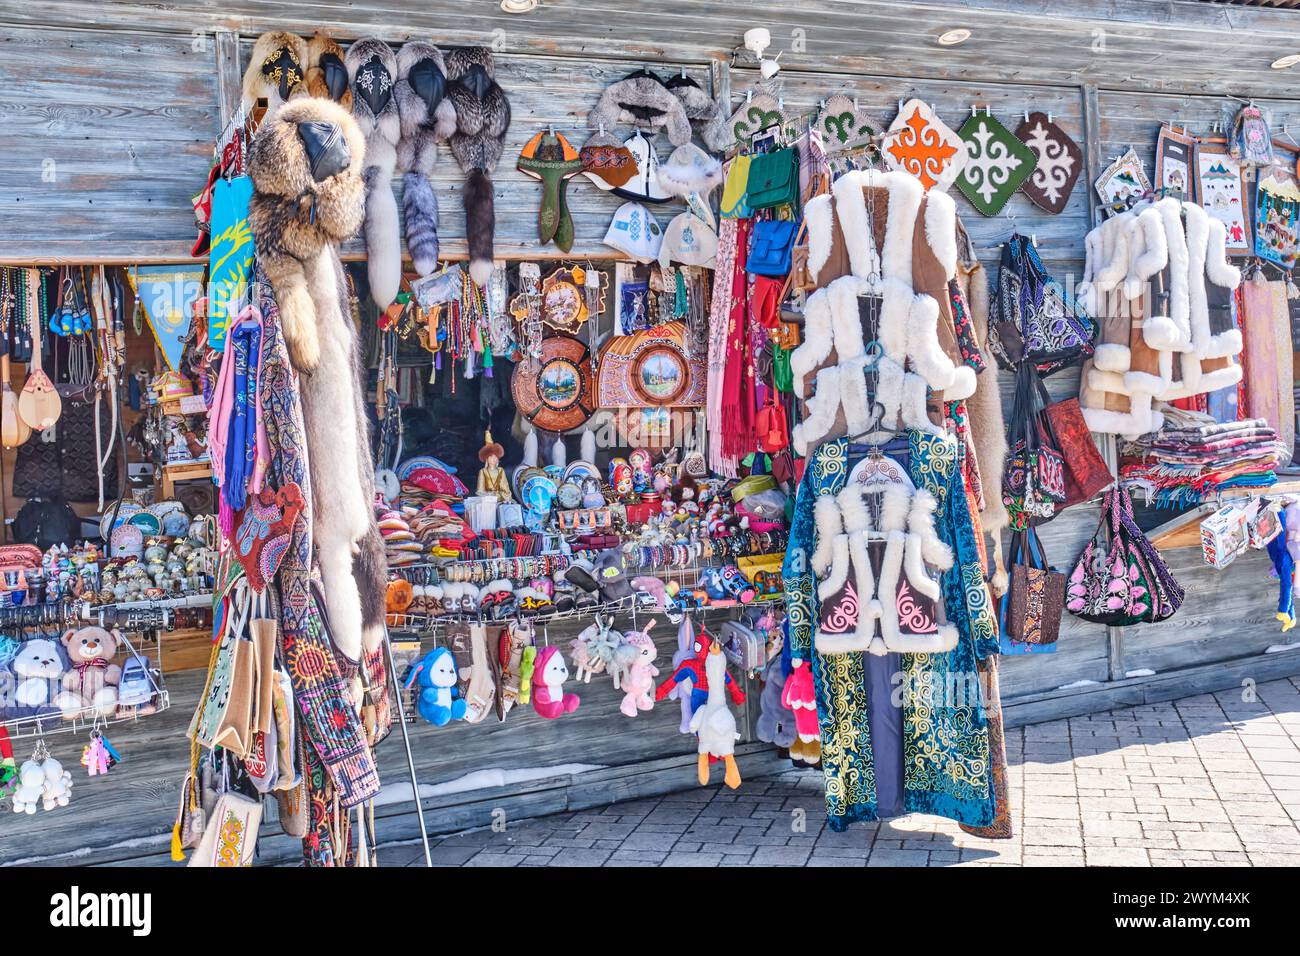 Almaty, Kazakhstan - 15 mars 2024 : marché local avec des souvenirs traditionnels kazakhs colorés et de l'artisanat des résidents locaux. Concept de voyage. Banque D'Images